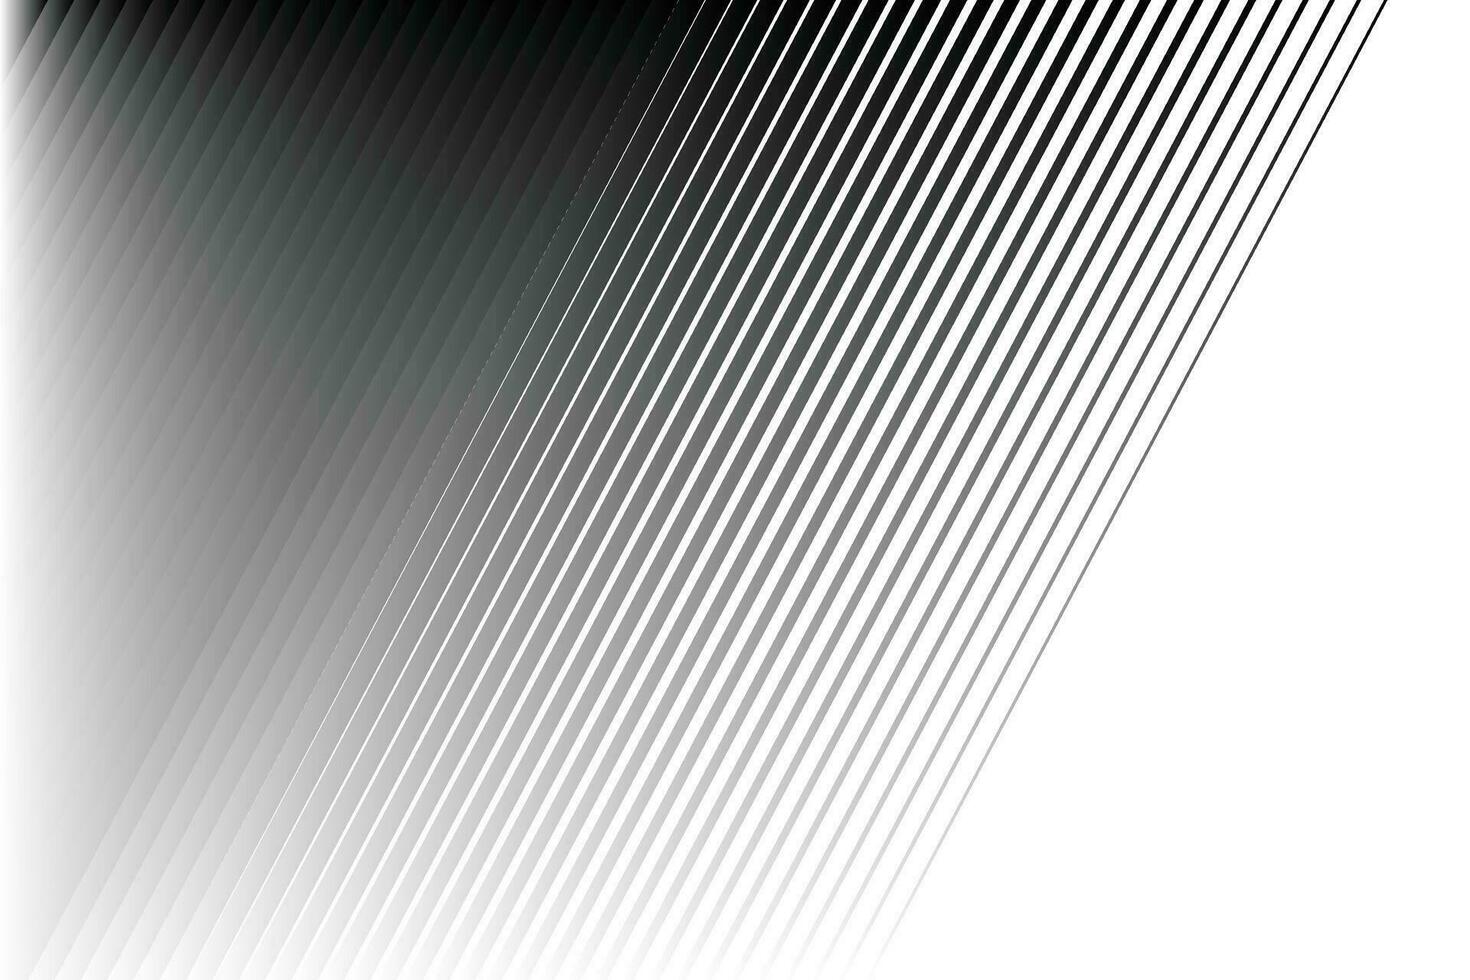 tunn hetero linje slät övergång från svart till vit linje mönster bakgrund. vektor